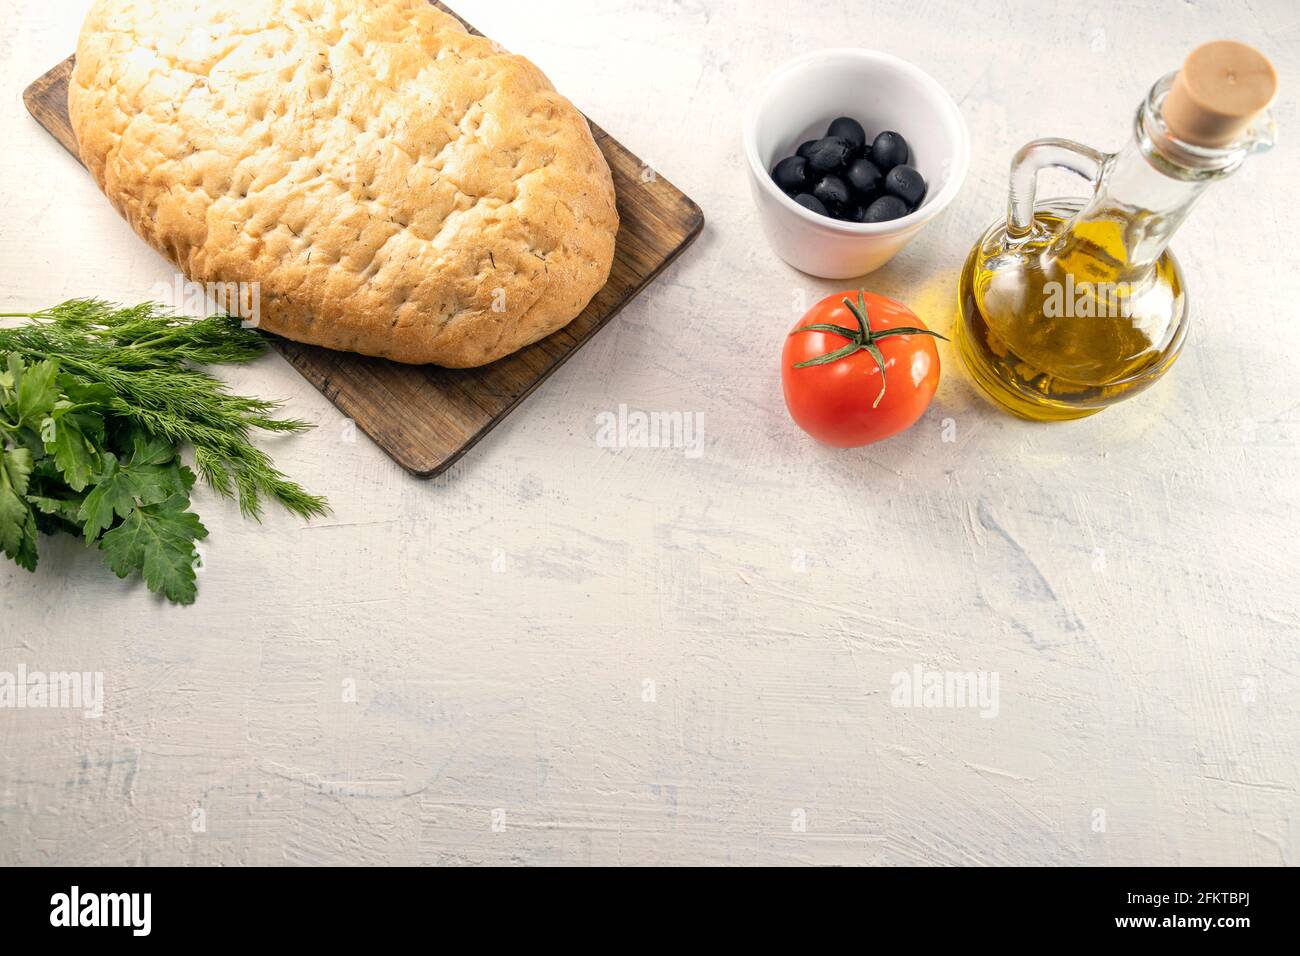 Serviert aus italienischem Focaccia.frisches, leckeres Brot mit aromatischen Kräutern auf Holzbrett neben schwarzen Oliven, Tomaten, Petersilie und Olivenöl auf weißer Textur Stockfoto